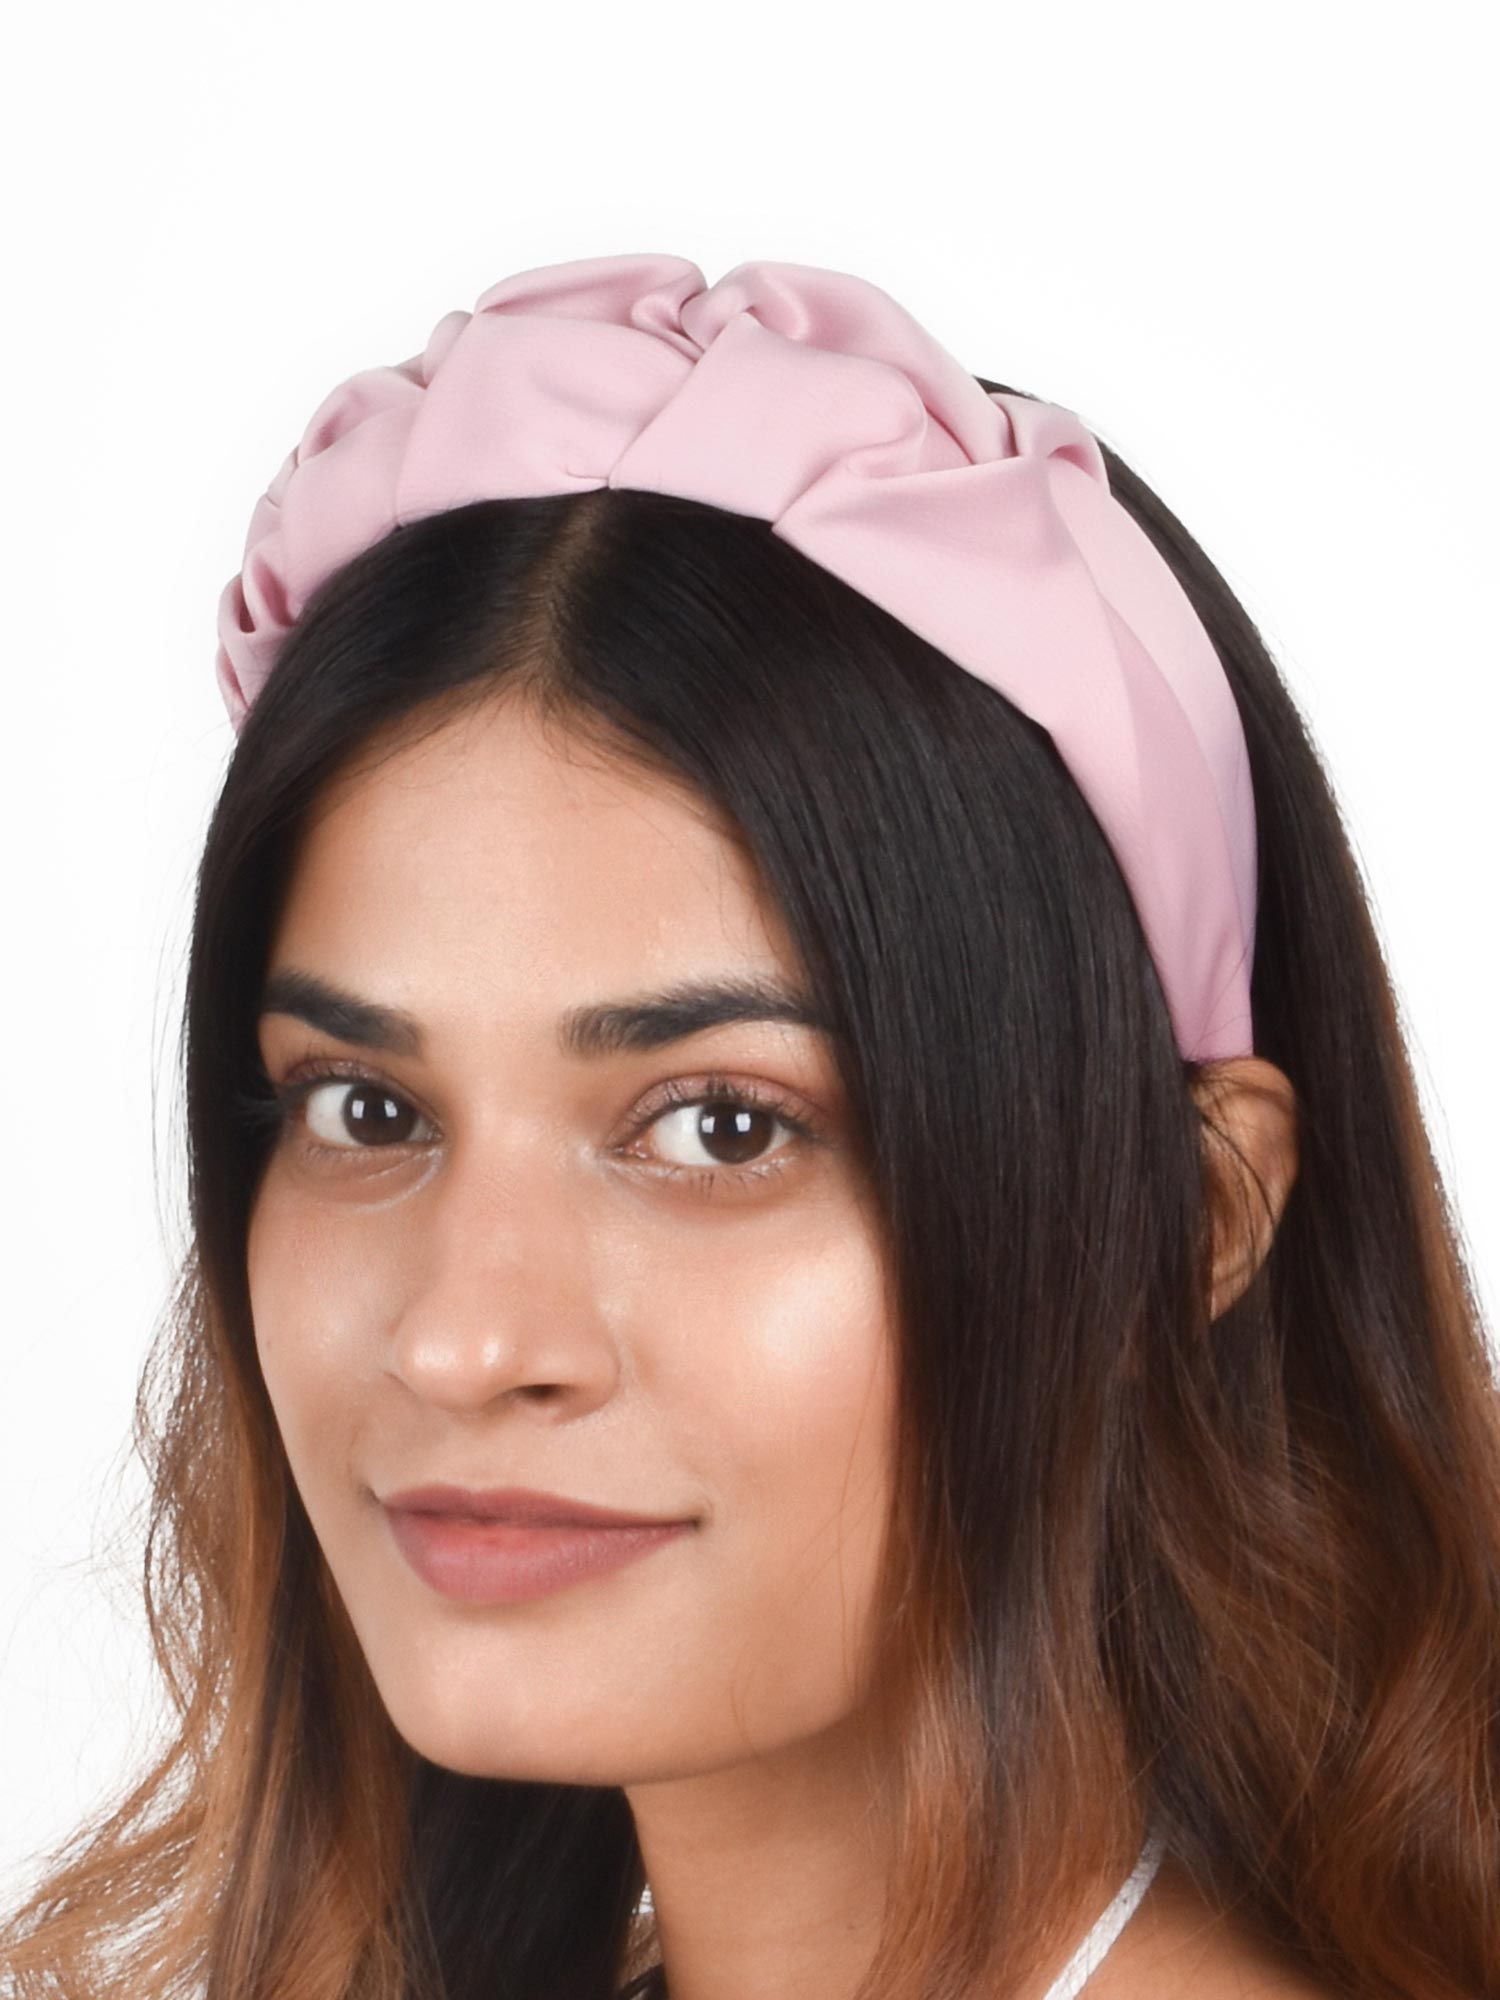 13 Trending Headbands 2019 ideas  headbands hair accessories for women hair  accessories